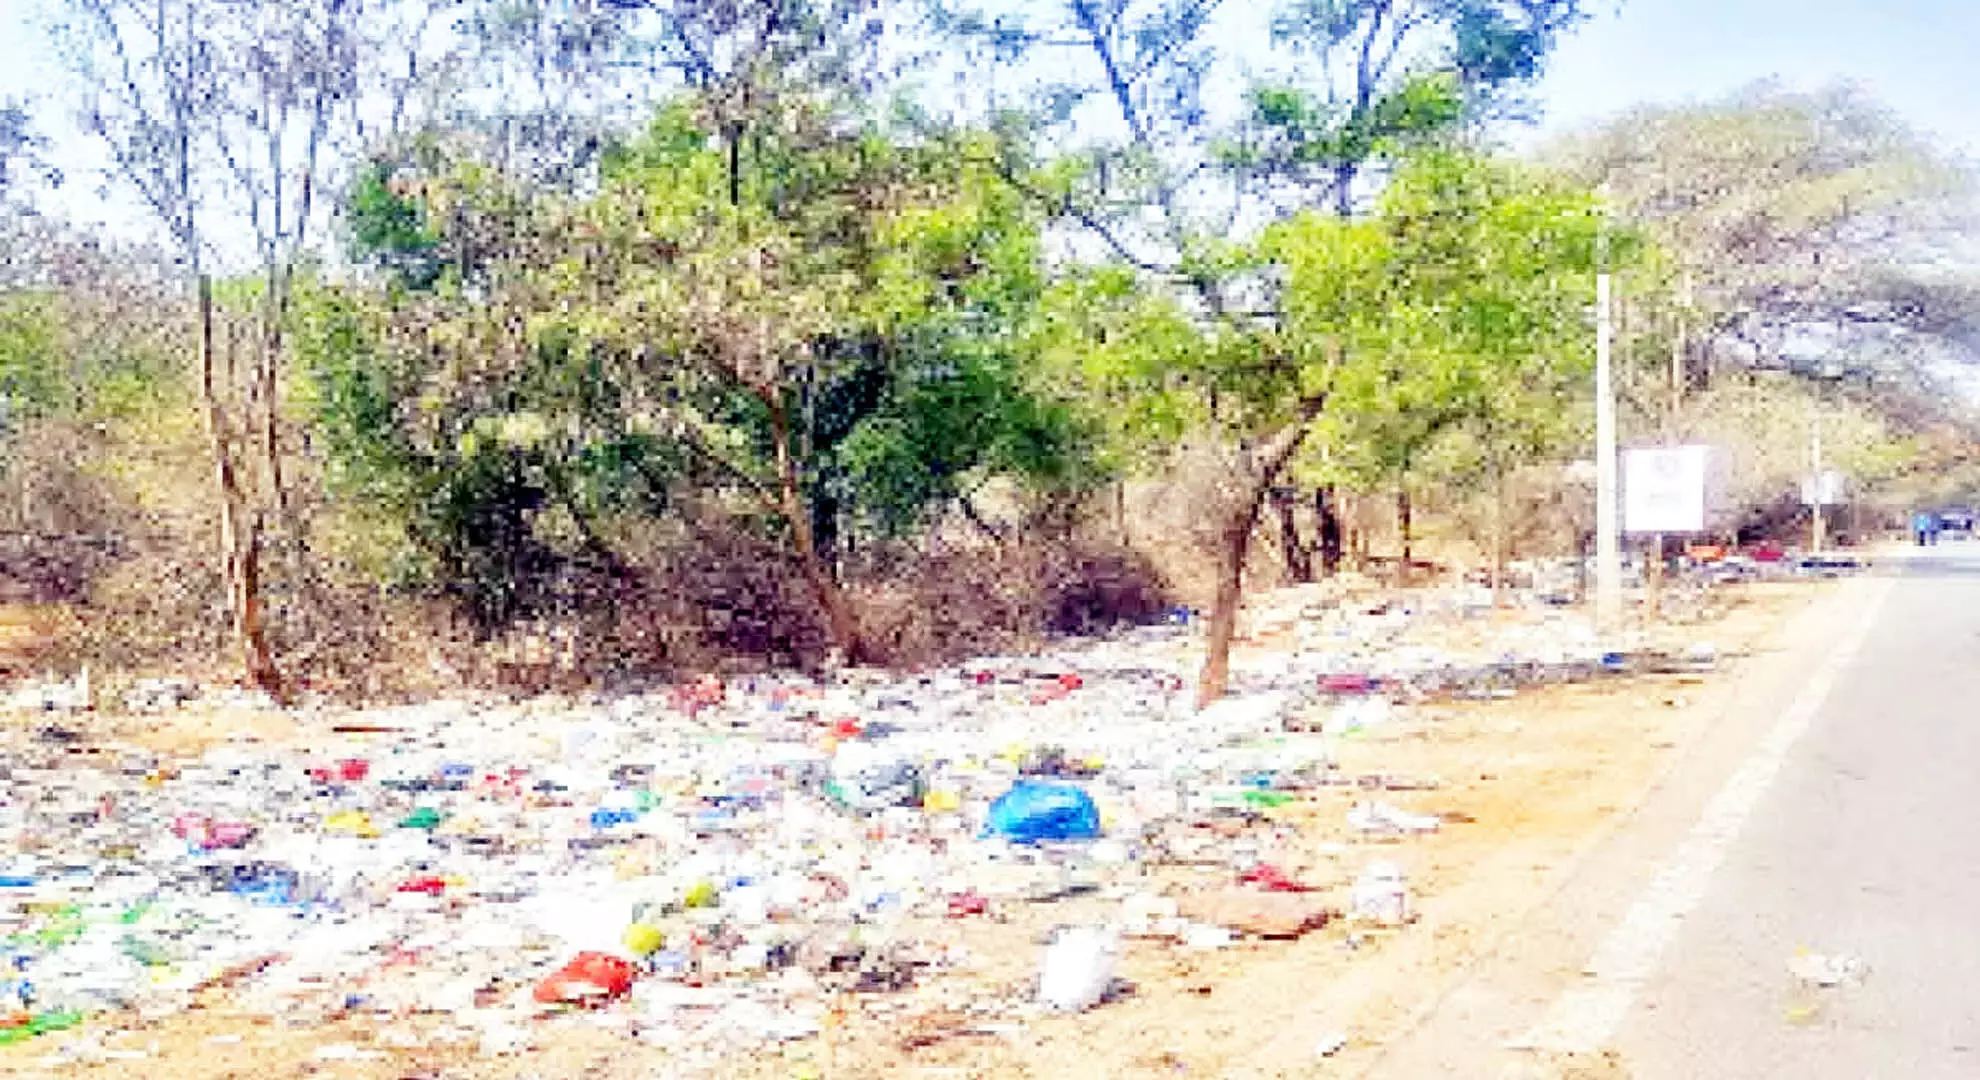 हैदराबाद: शहर में कचरे का अंबार लगा हुआ है और नागरिक स्वच्छता के पक्ष में हैं